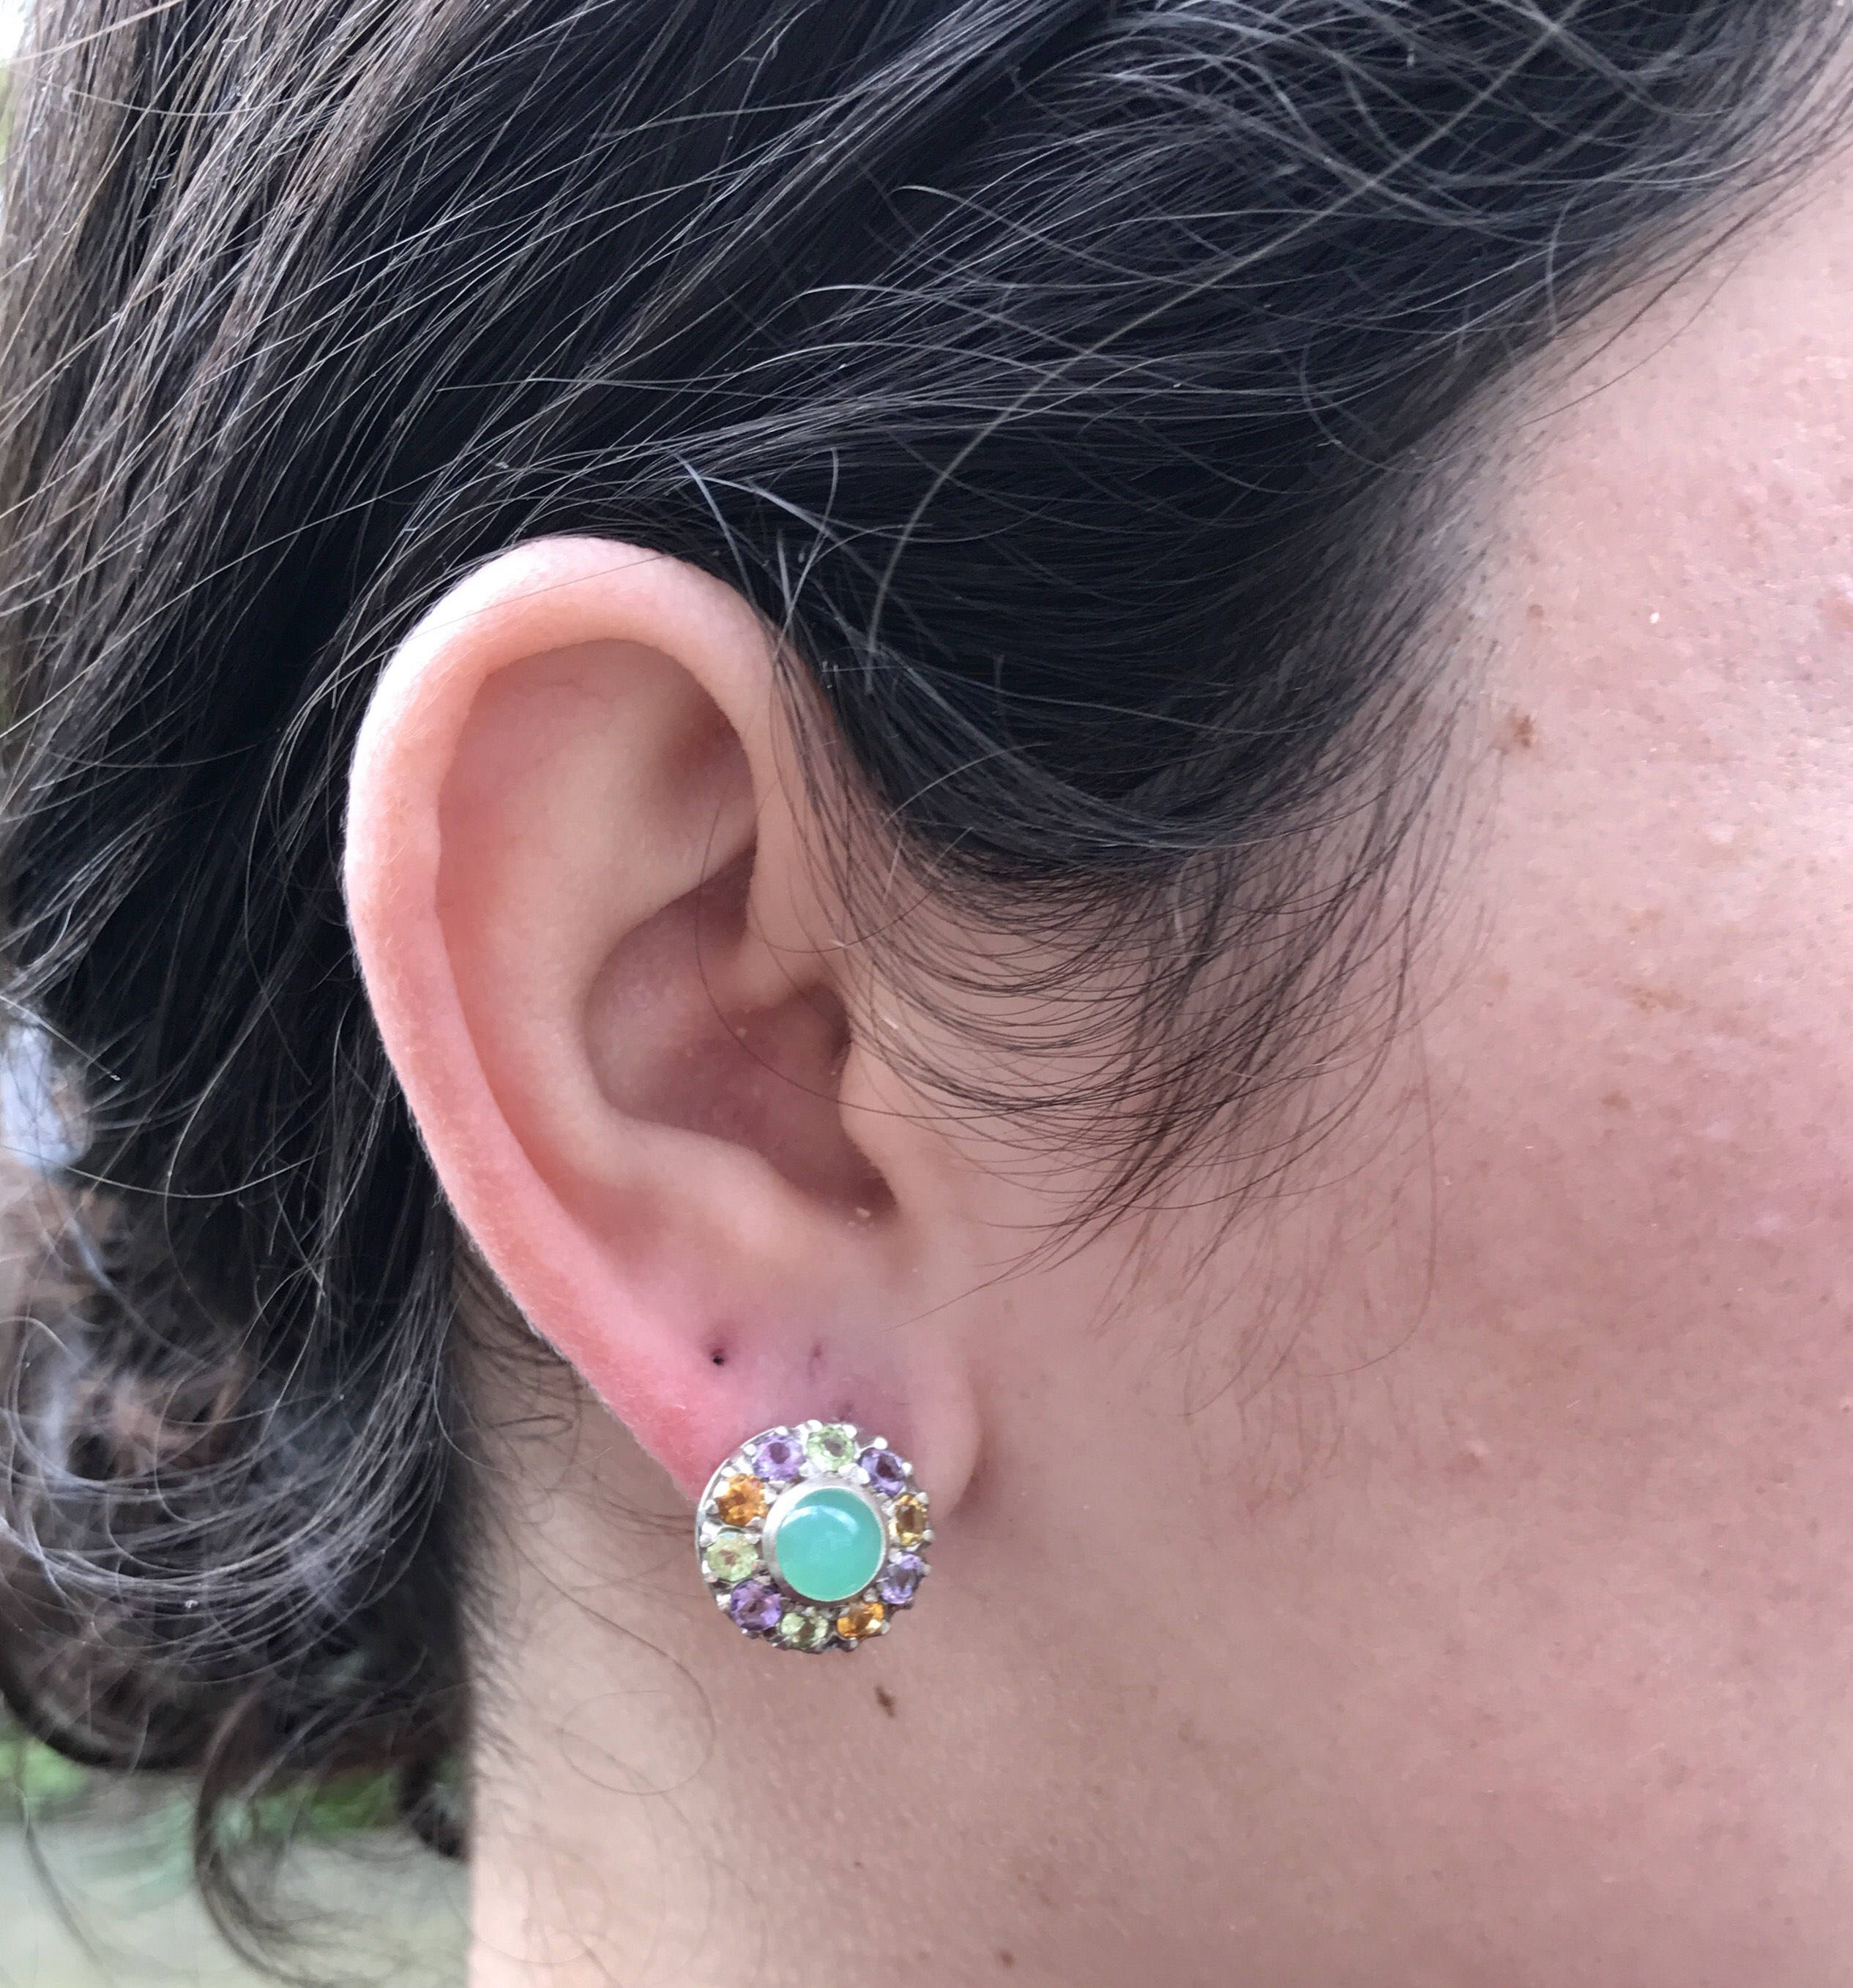 Multistone Earrings, Chrysoprase Earrings, Victorian Earrings, May Birthstone, Green Statement Studs, May Earrings, Solid Silver Earrings